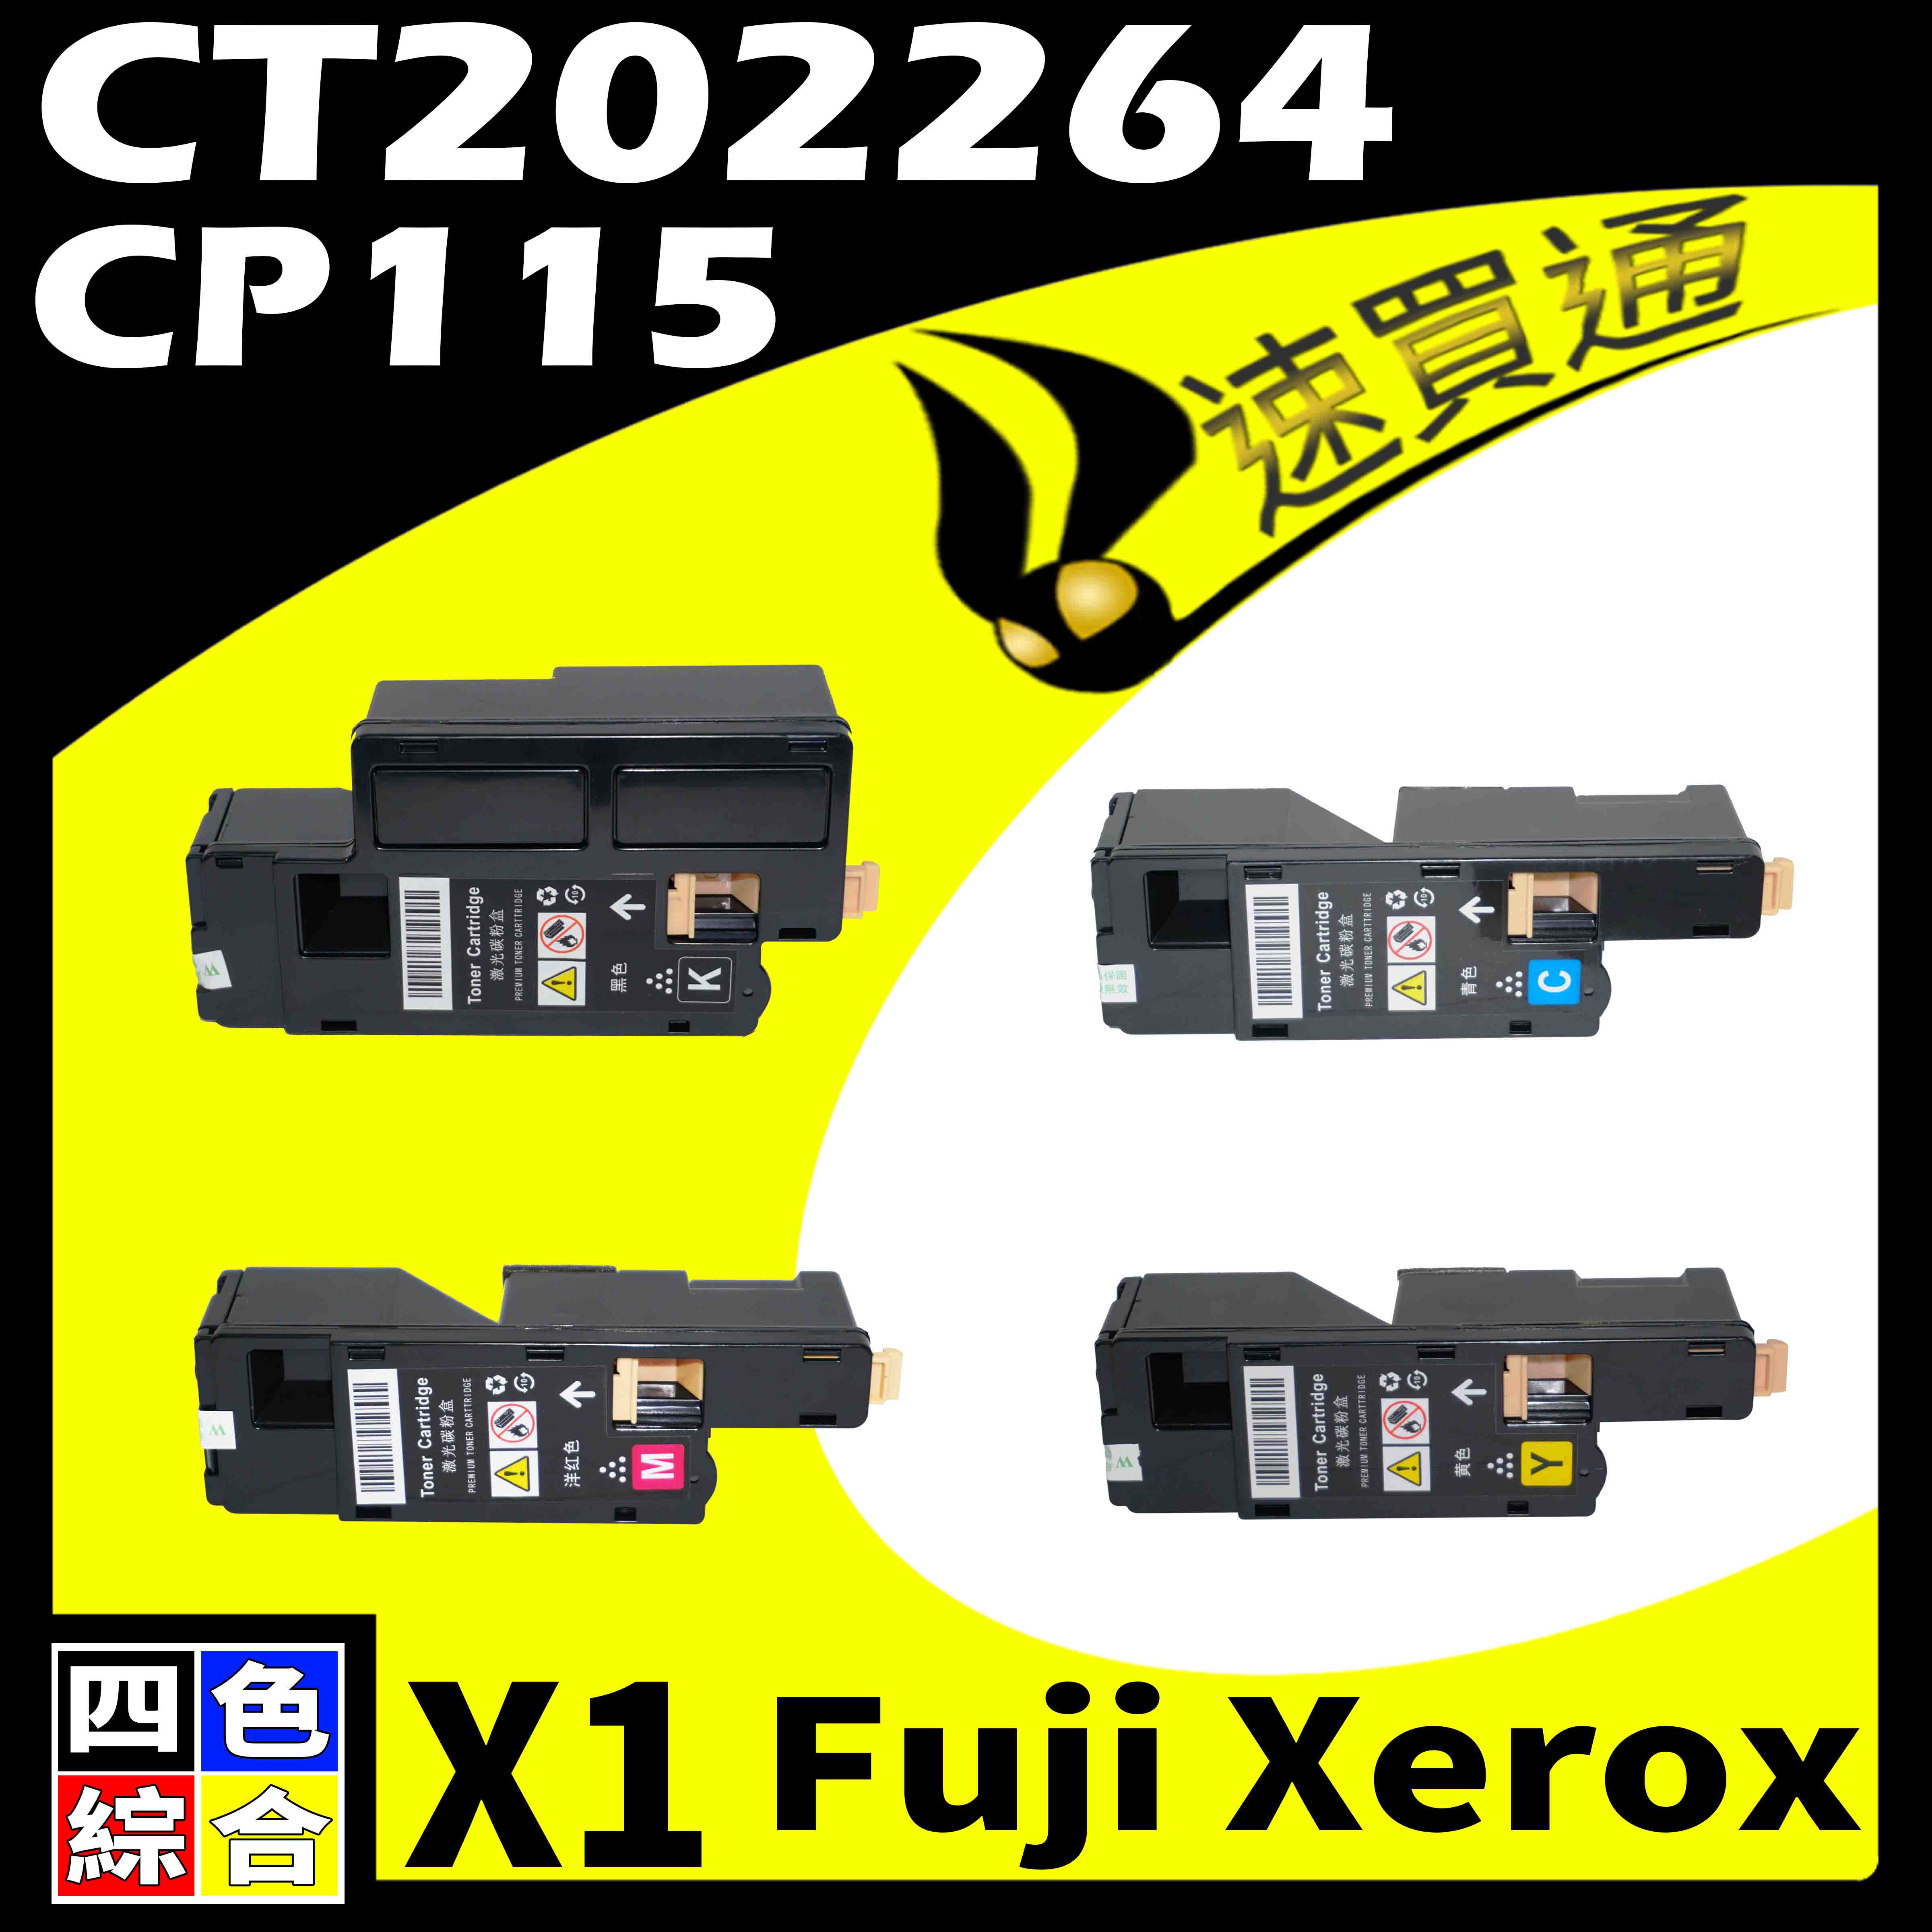 【速買通】Fuji Xerox CP115/CT202264 四色 相容彩色碳粉匣 適用 CP116w/CM225fw